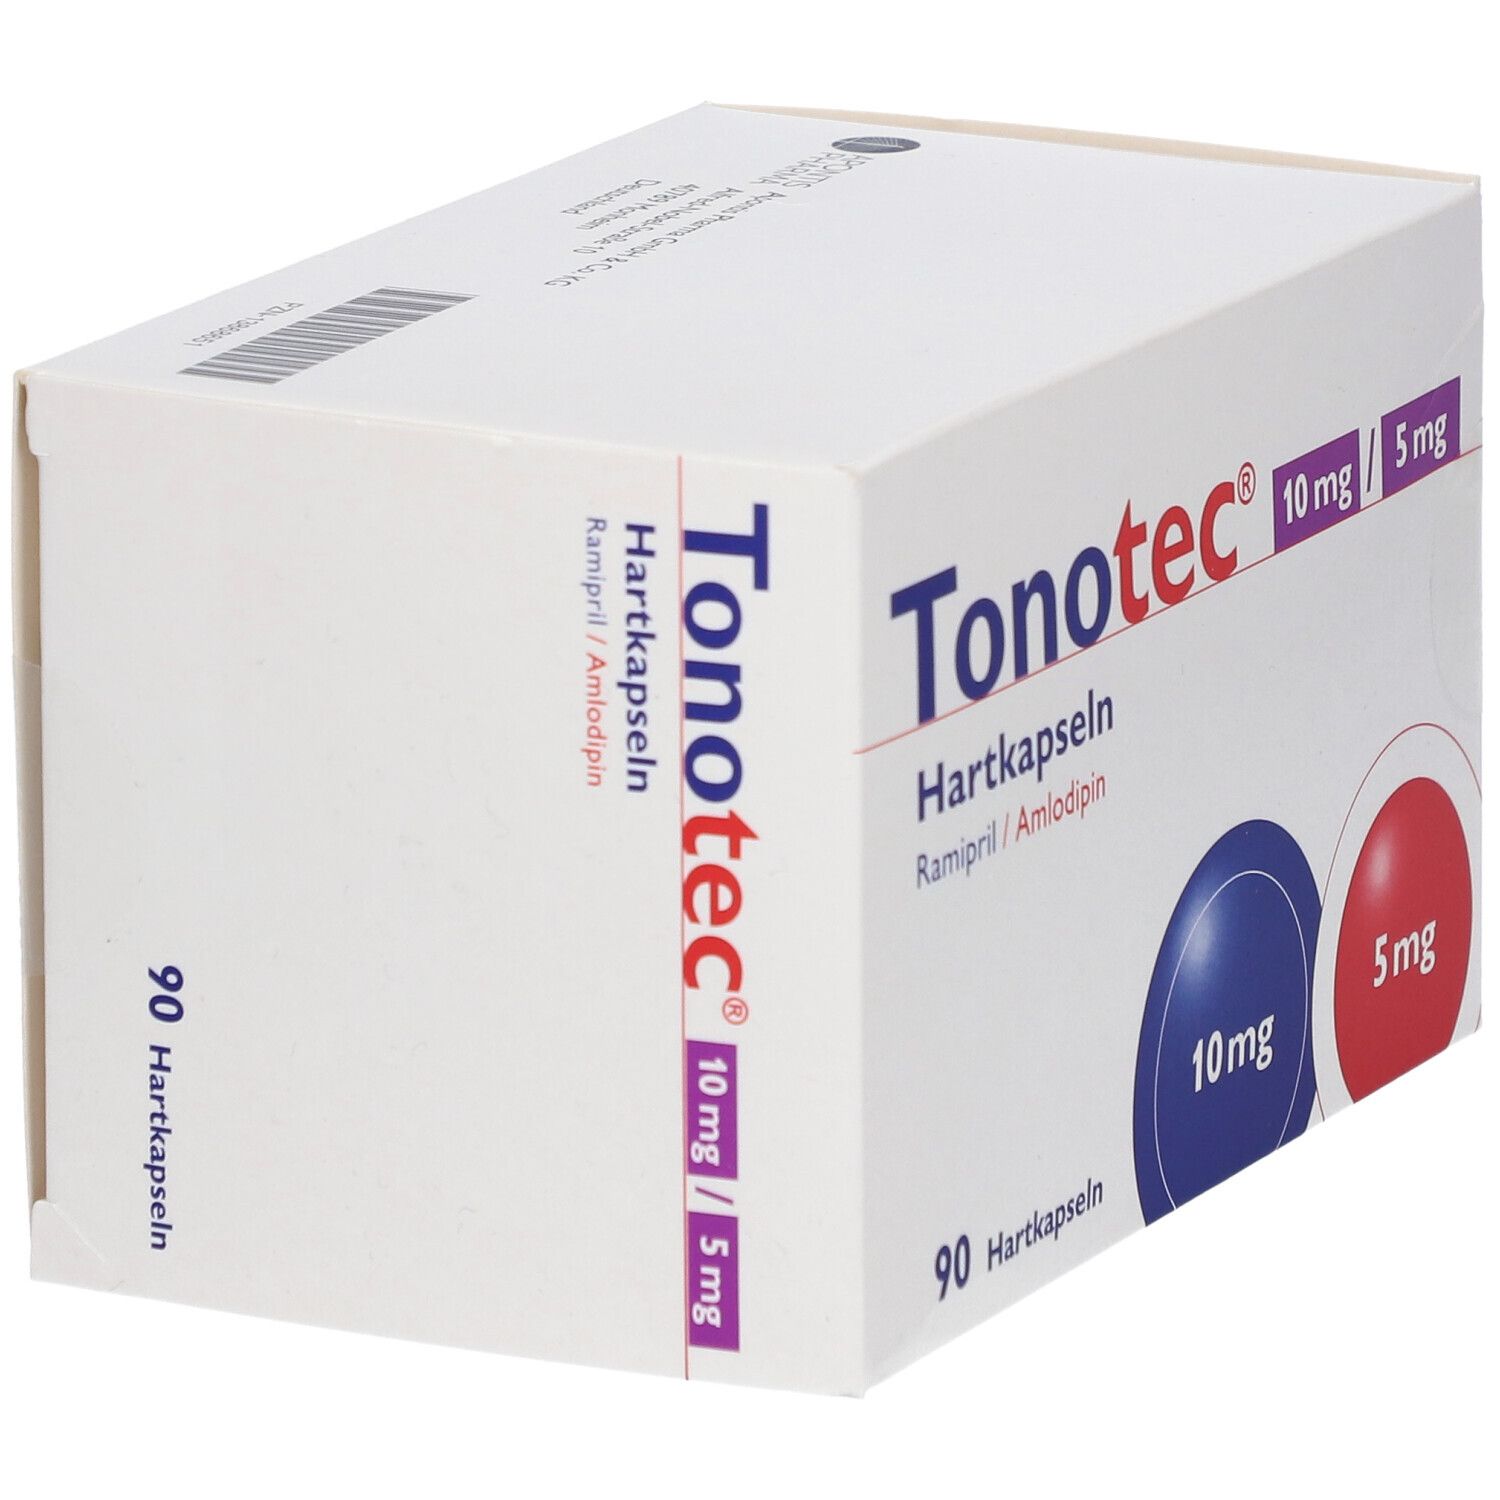 Tonotec® 10 mg/5 mg